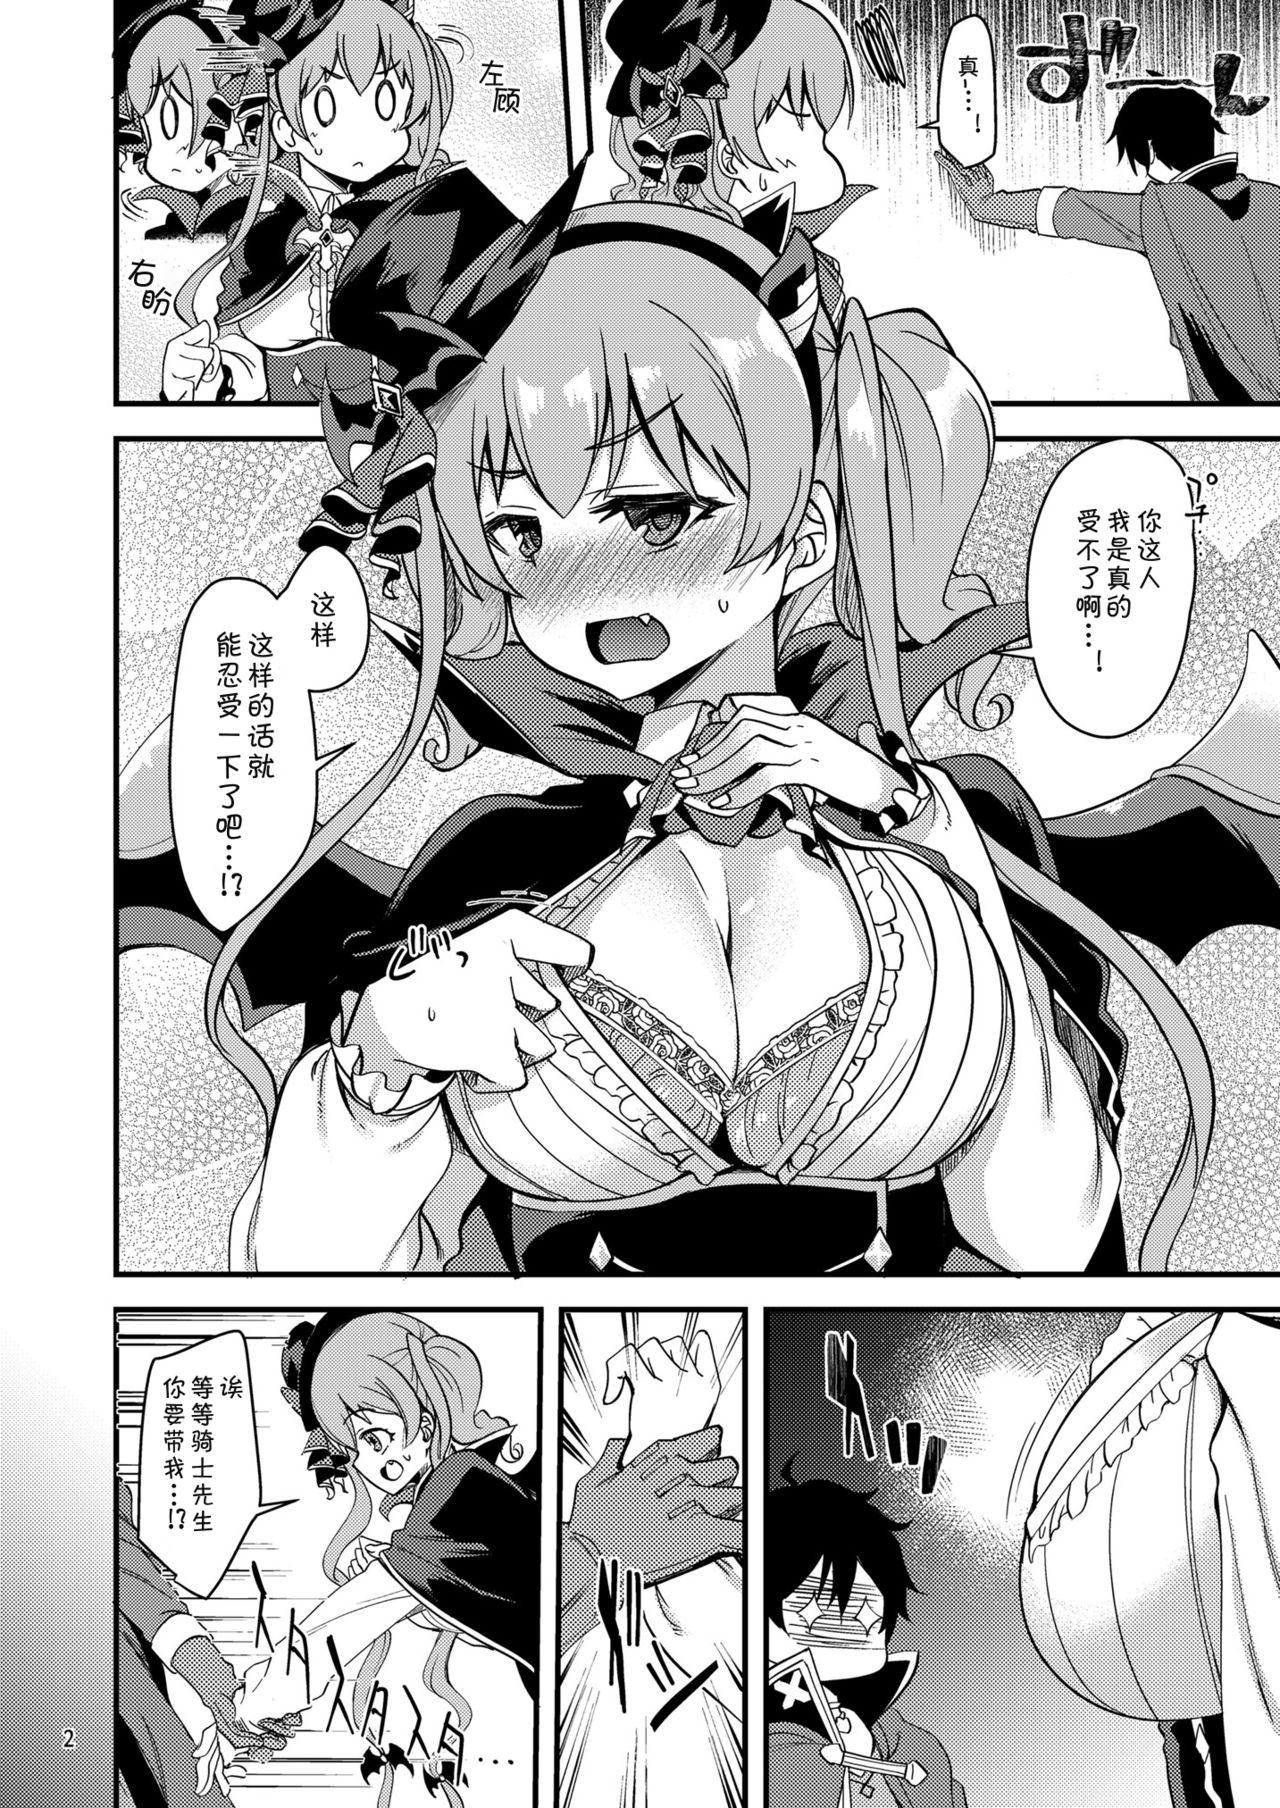 Hard Cock Tsumugi Make Heroine Move!! 05 - Princess connect Jockstrap - Page 3